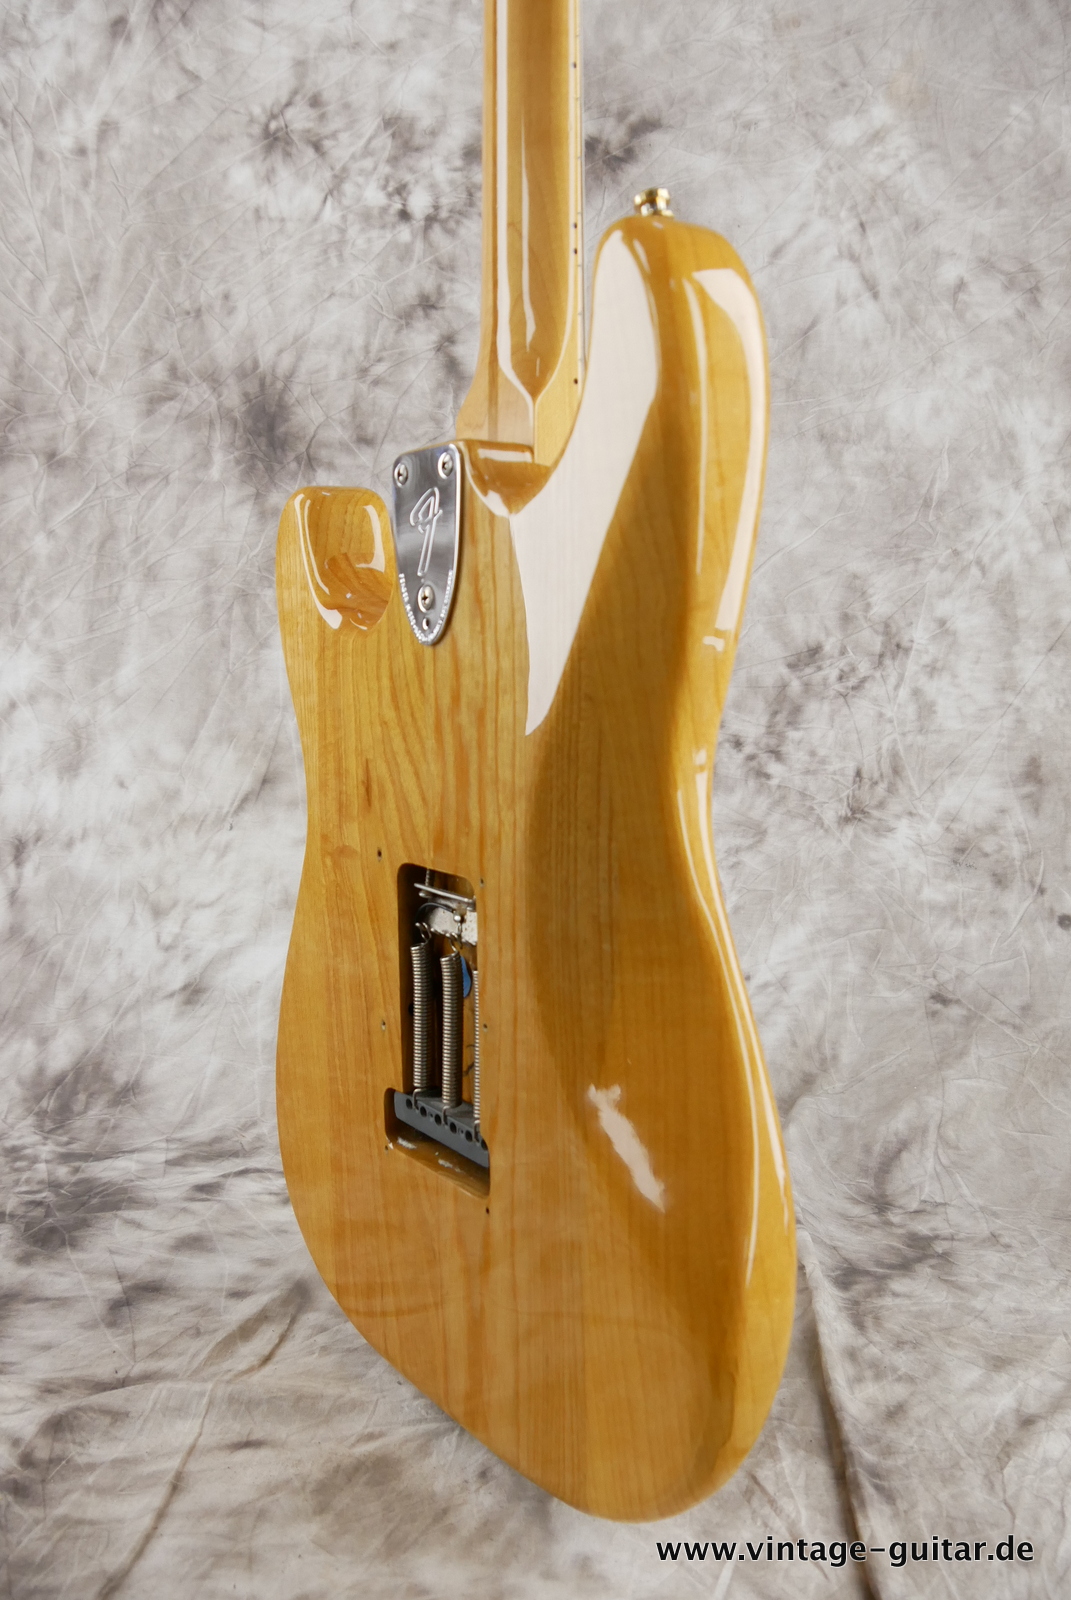 Fender_Stratocaster_70s_reissue_maple_neck_1999_Mexico-008.JPG